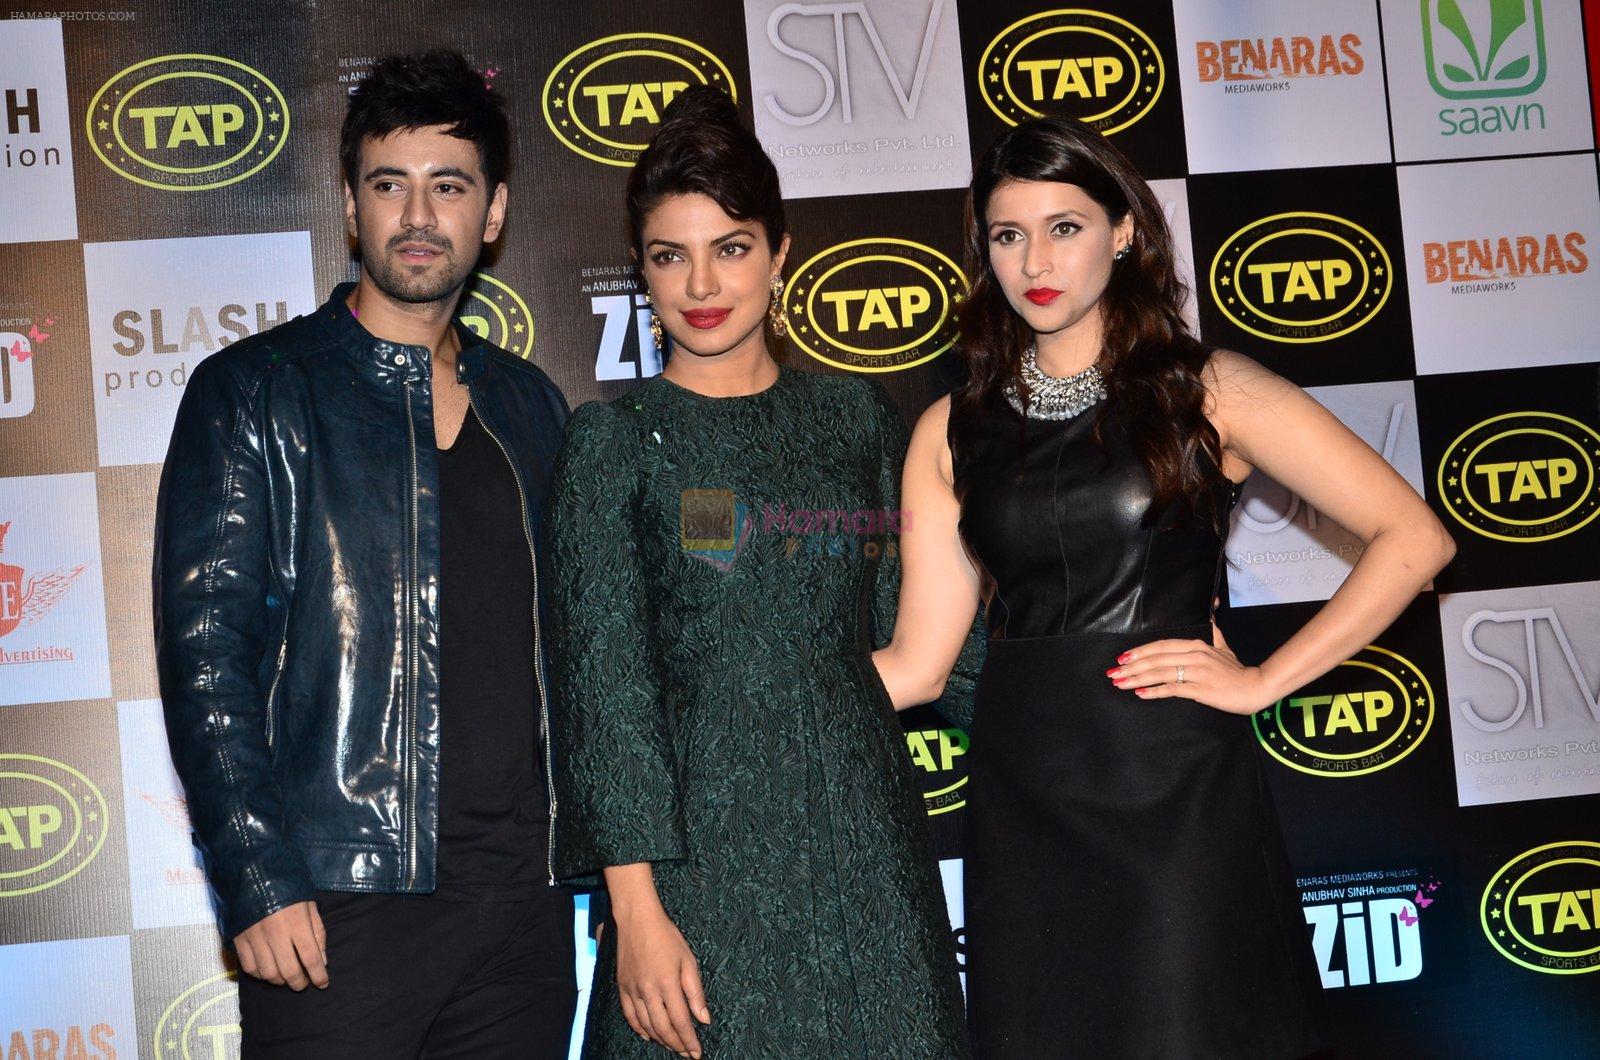 Karanvir Sharma, Priyanka Chopra, Mannara at Music success bash of Zid in Andheri, Mumbai on 25th Nov 2014